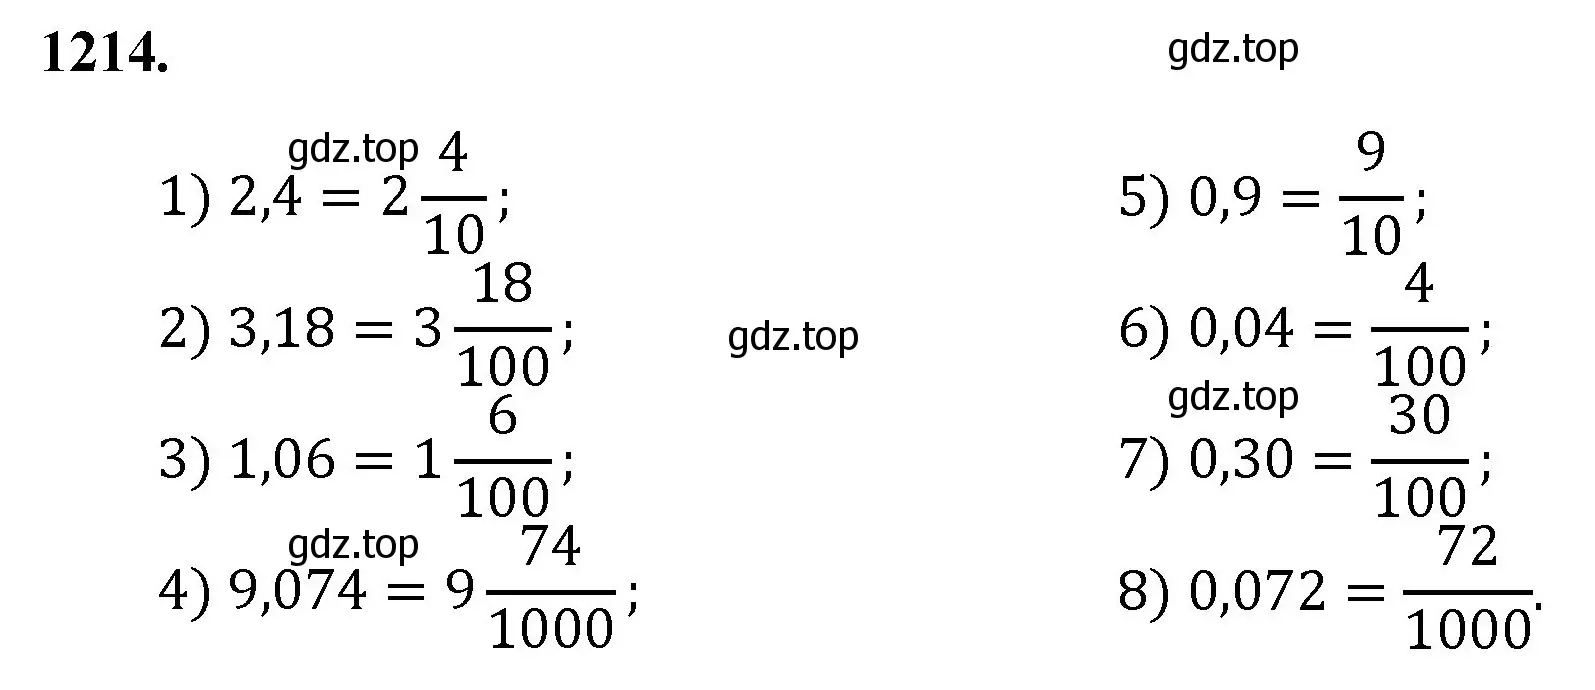 Решение номер 1214 (страница 269) гдз по математике 5 класс Мерзляк, Полонский, учебник